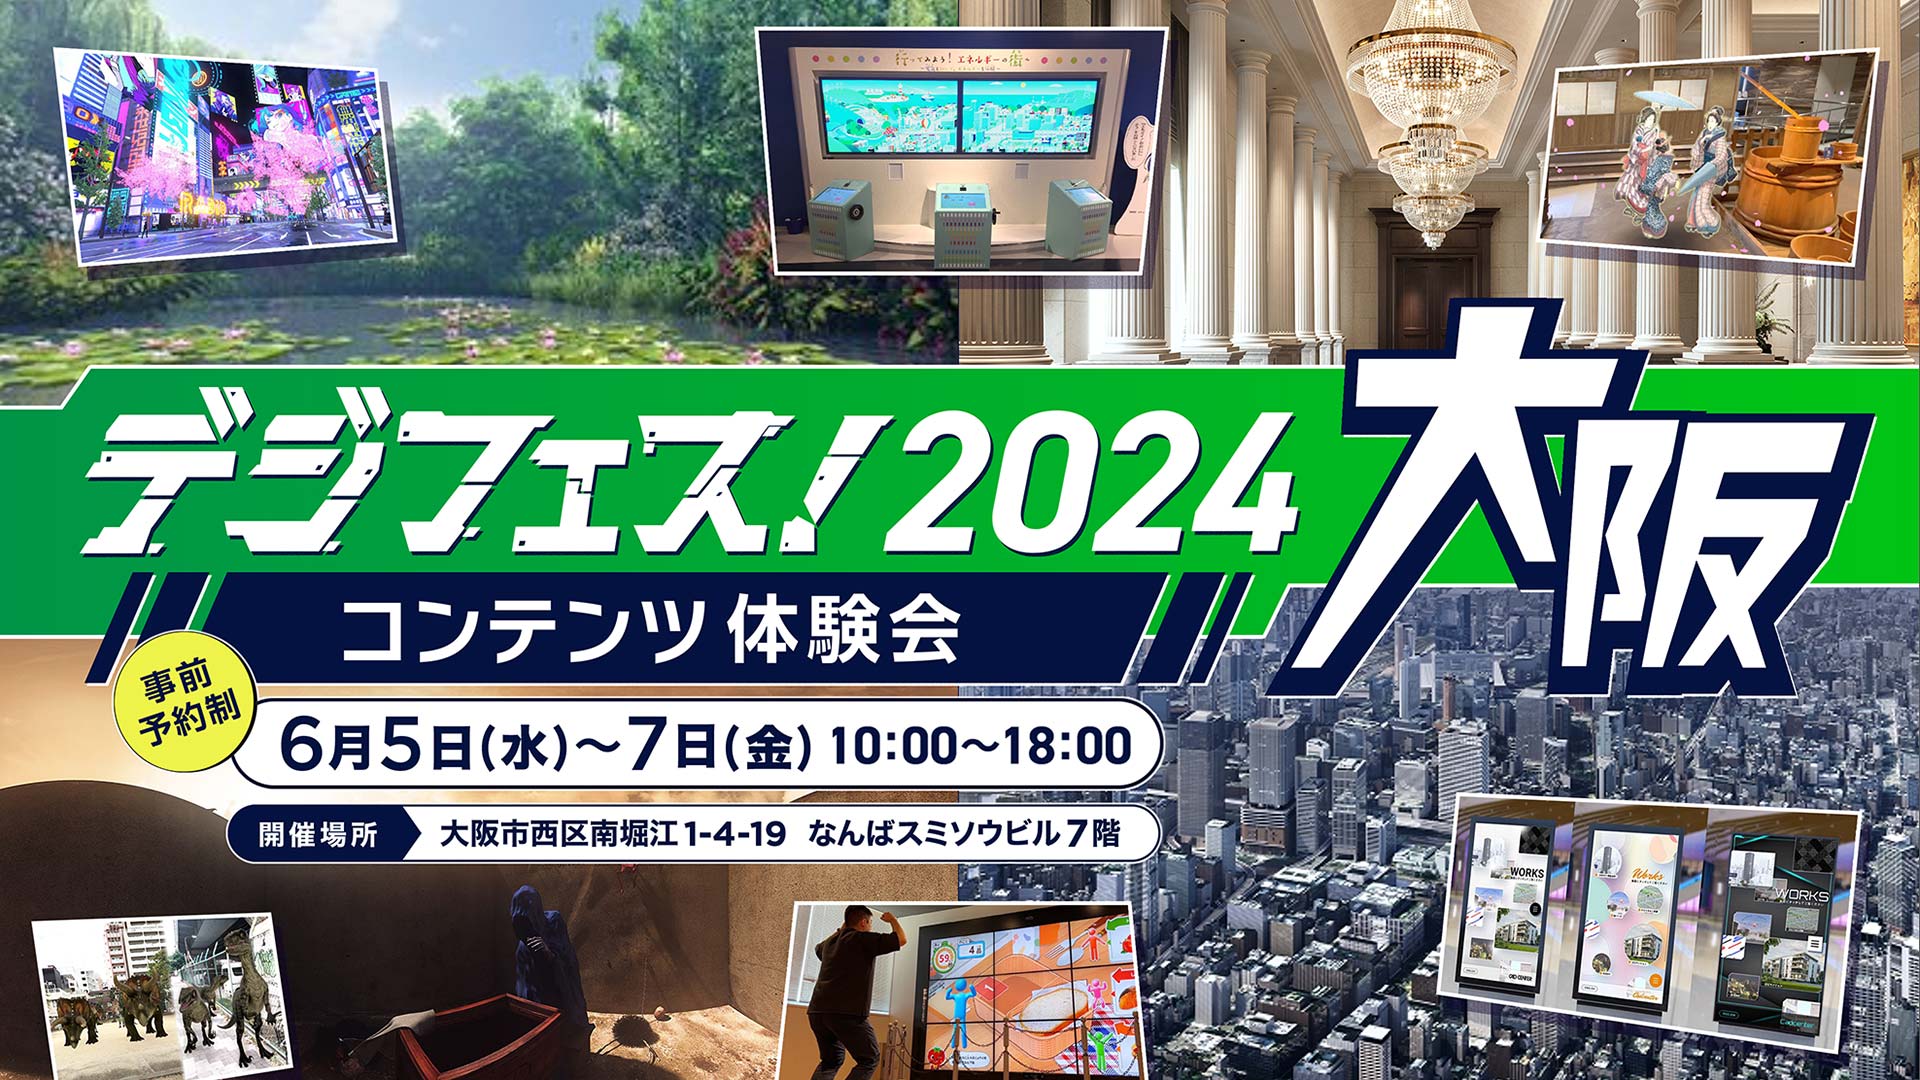 「デジフェス! 2024 大阪」を開催します